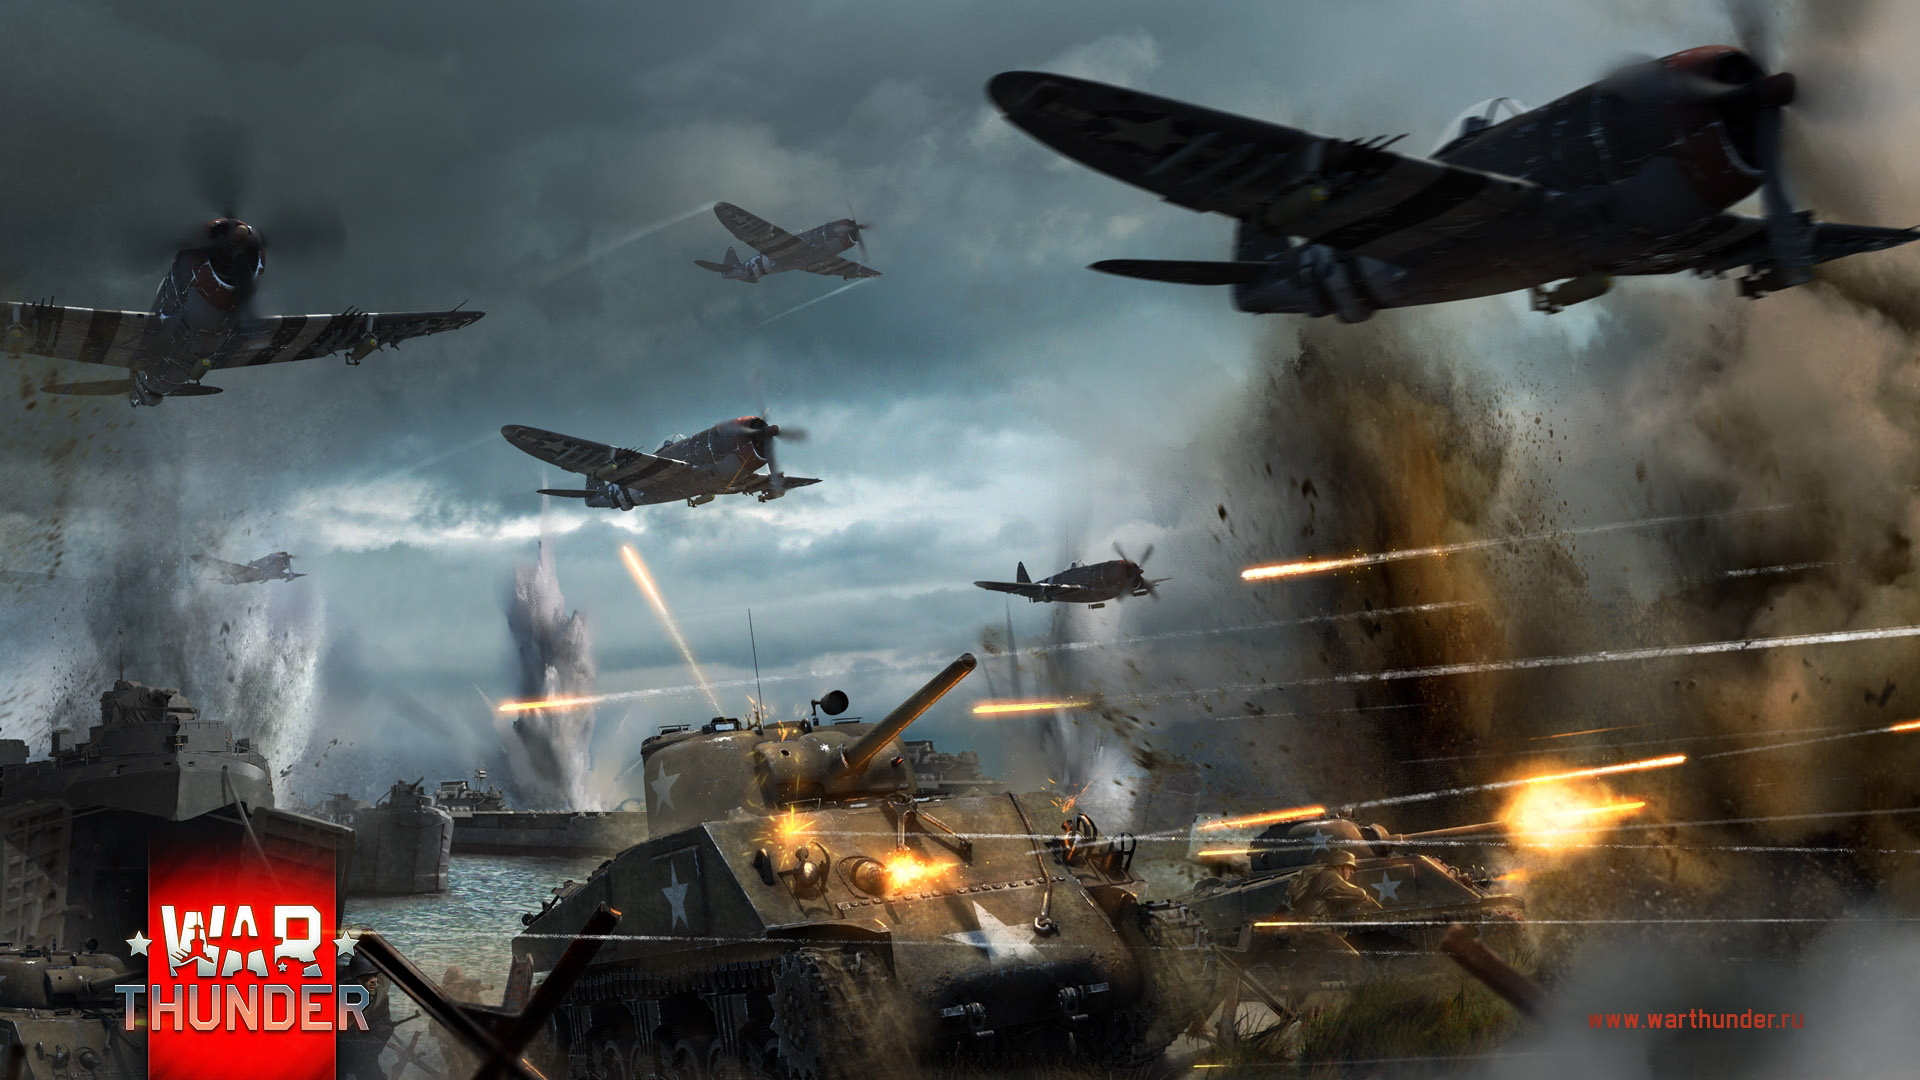 壁紙 1920x1080 War Thunder 飛行機 P 47 M4 Sherman ゲーム ダウンロード 写真